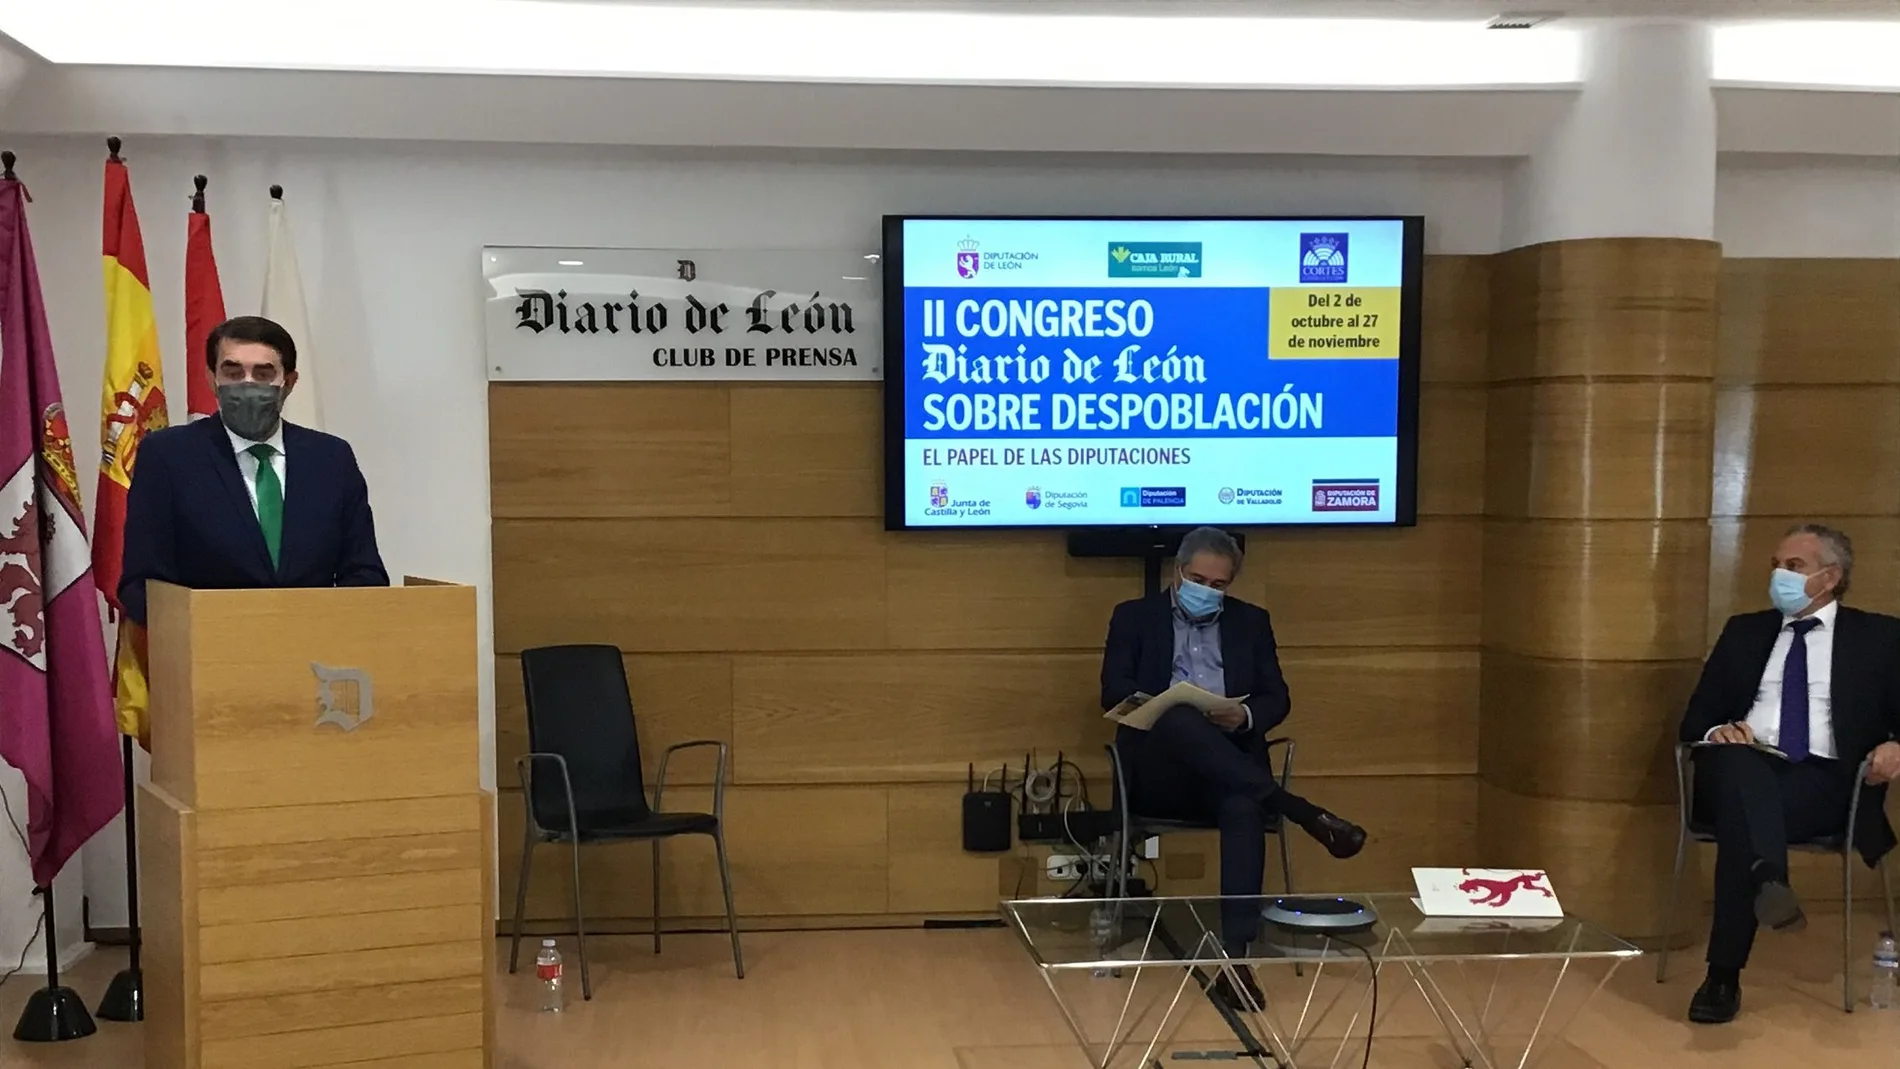 El consejero de Fomento y Medio Ambiente, Juan Carlos Suárez-Quiñones, interviene en la jornada sobre despoblación organizada por el Club de Prensa Diario de León